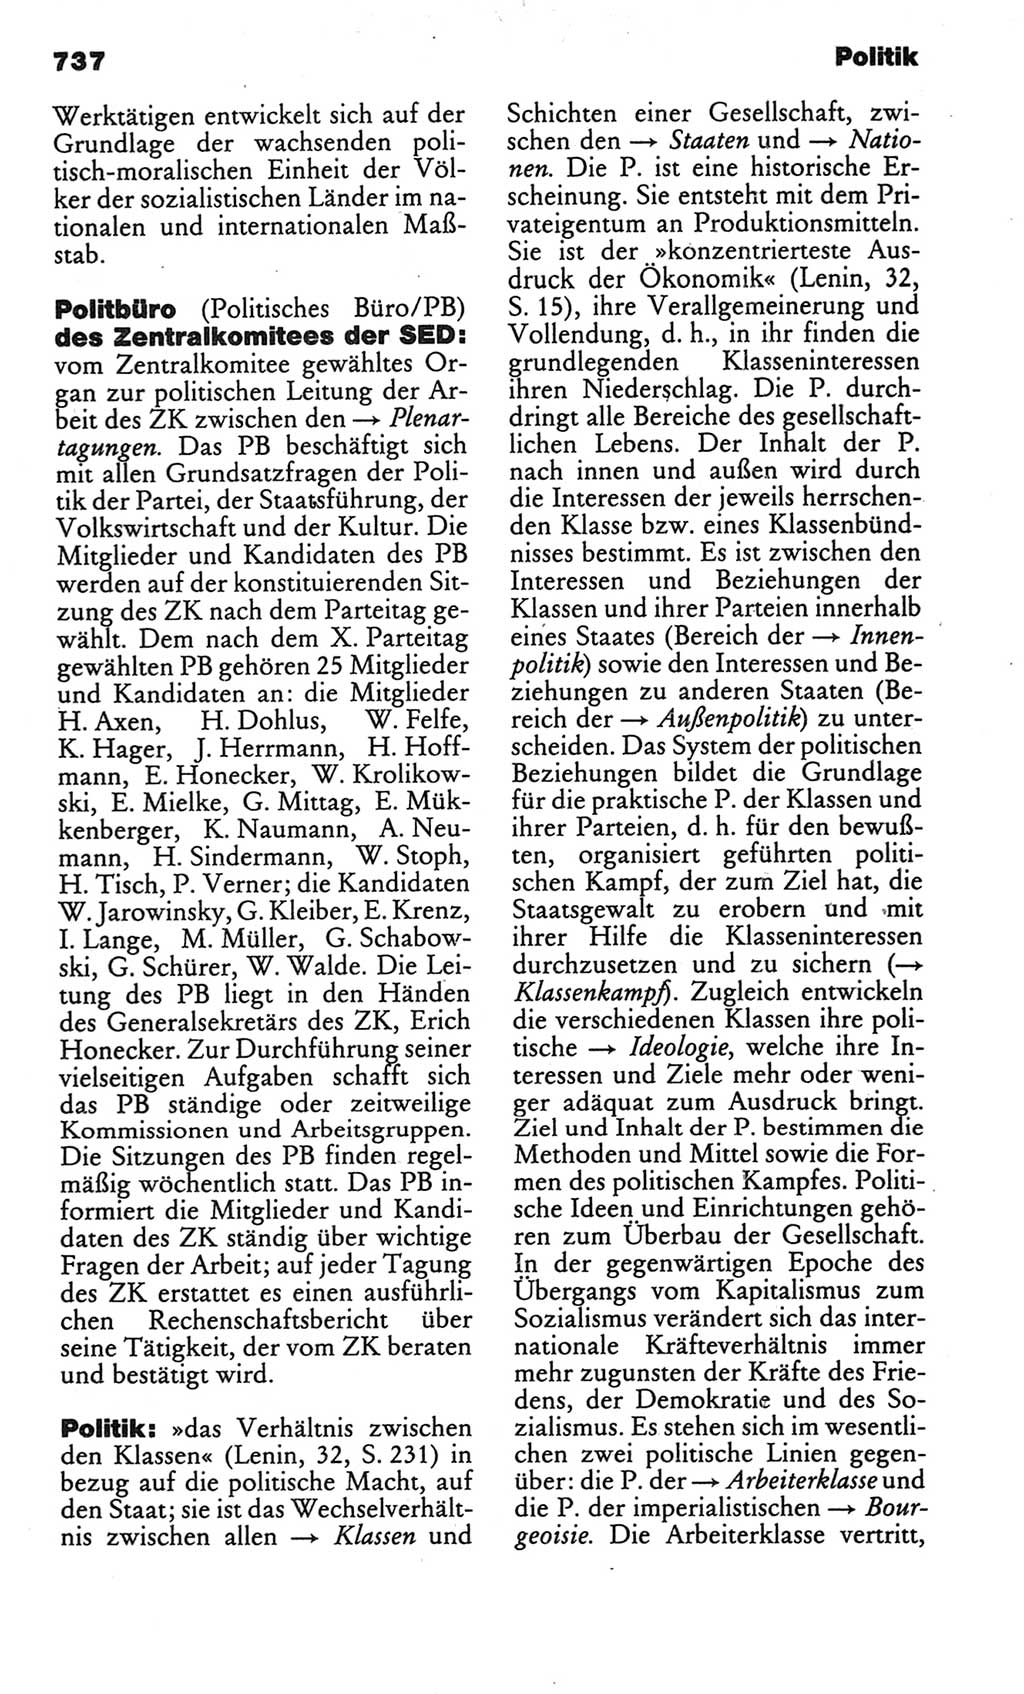 Kleines politisches Wörterbuch [Deutsche Demokratische Republik (DDR)] 1986, Seite 737 (Kl. pol. Wb. DDR 1986, S. 737)